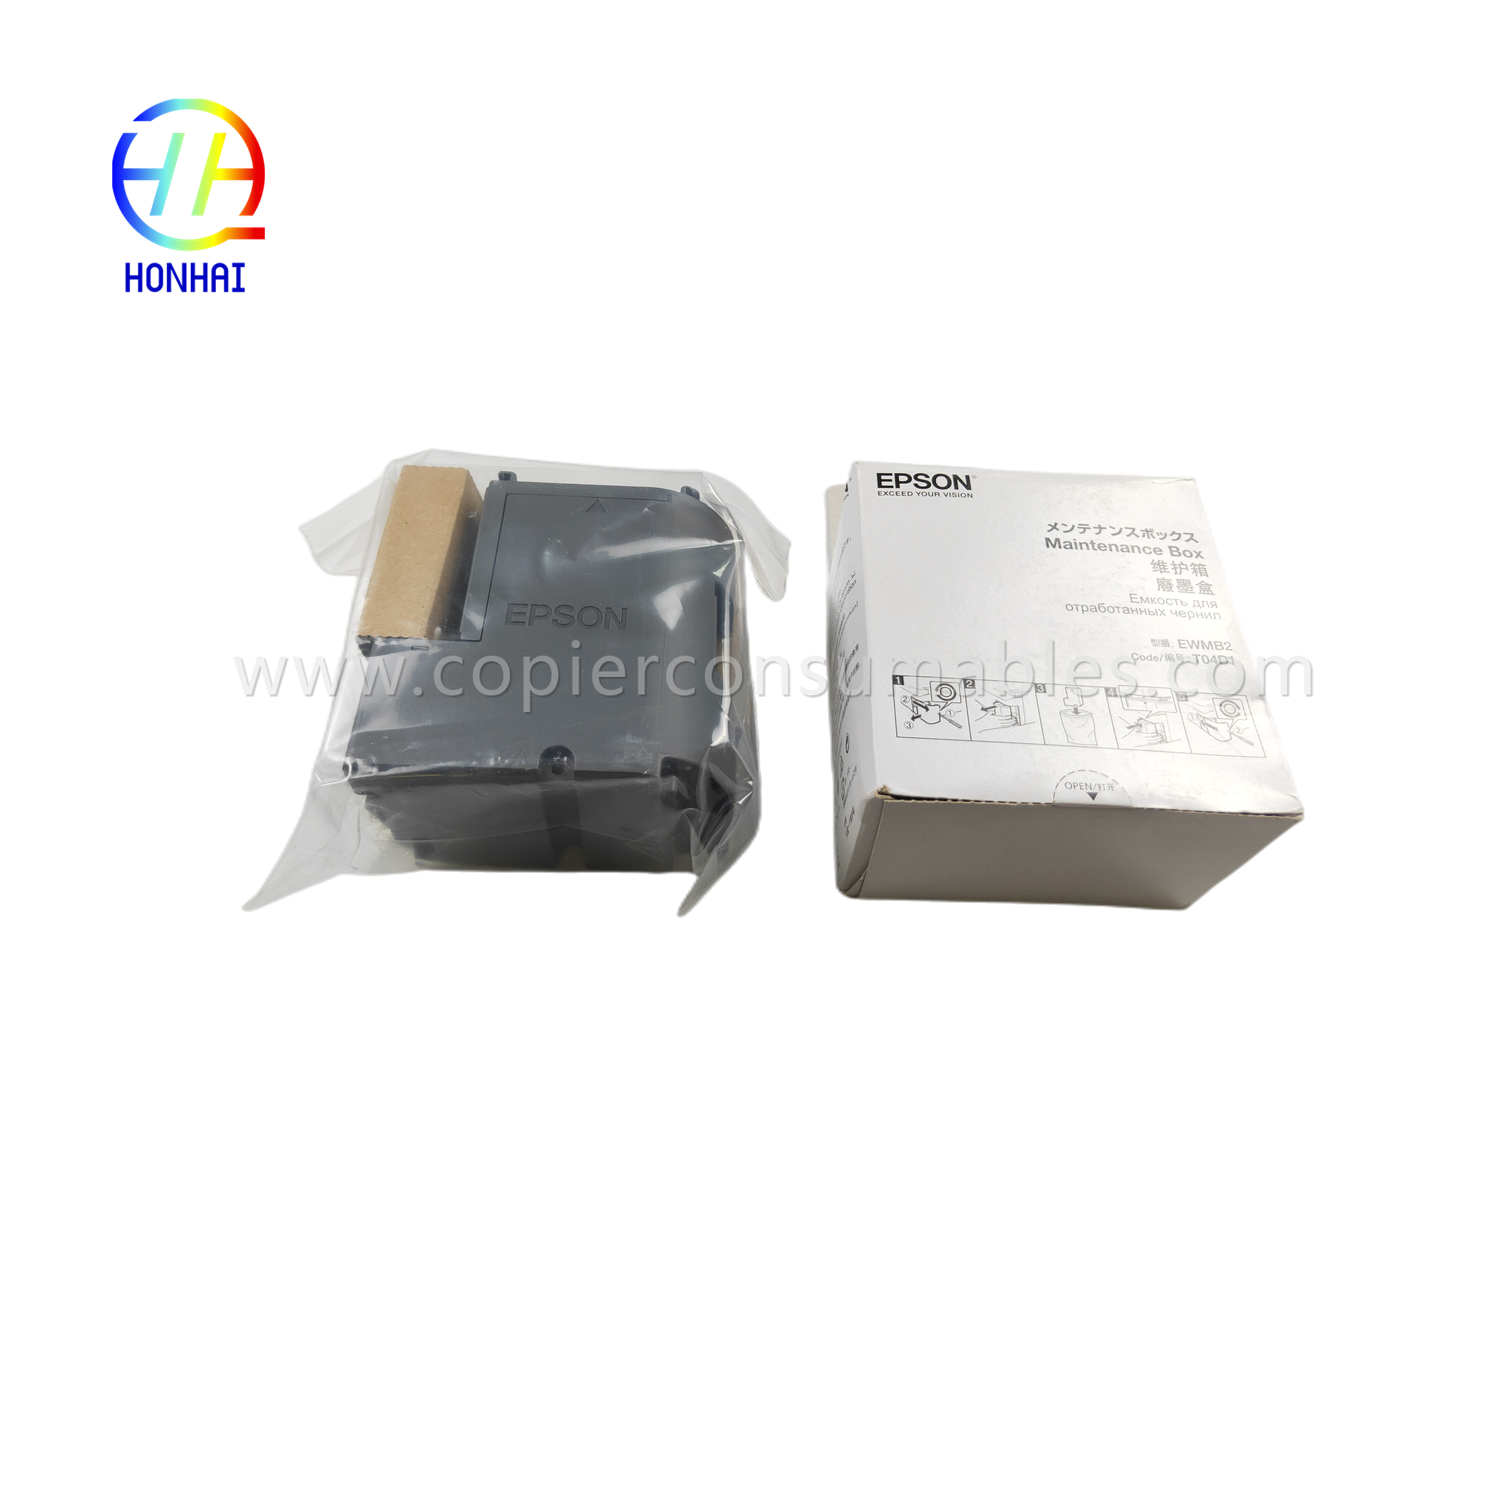 Original maintanence box for Epson L6160 L6170 L6190 M1140